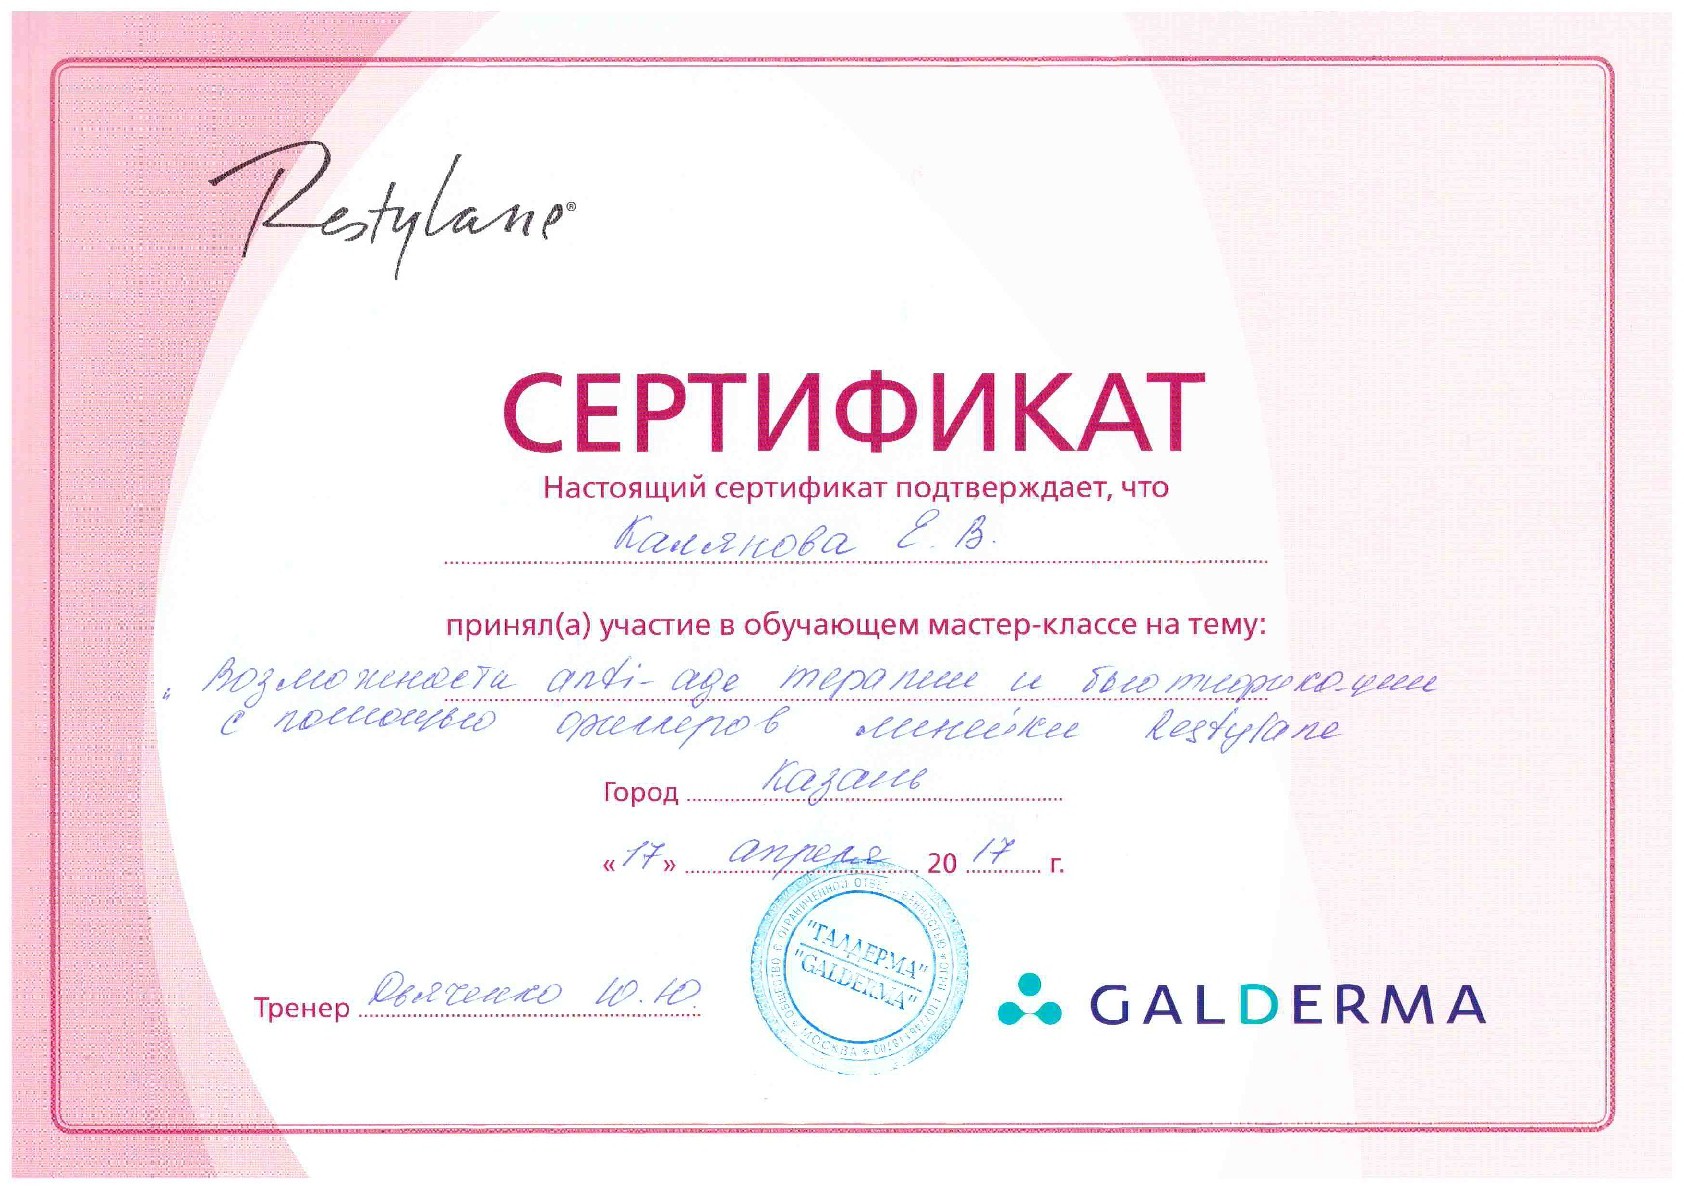 Сертификат Чичириной 